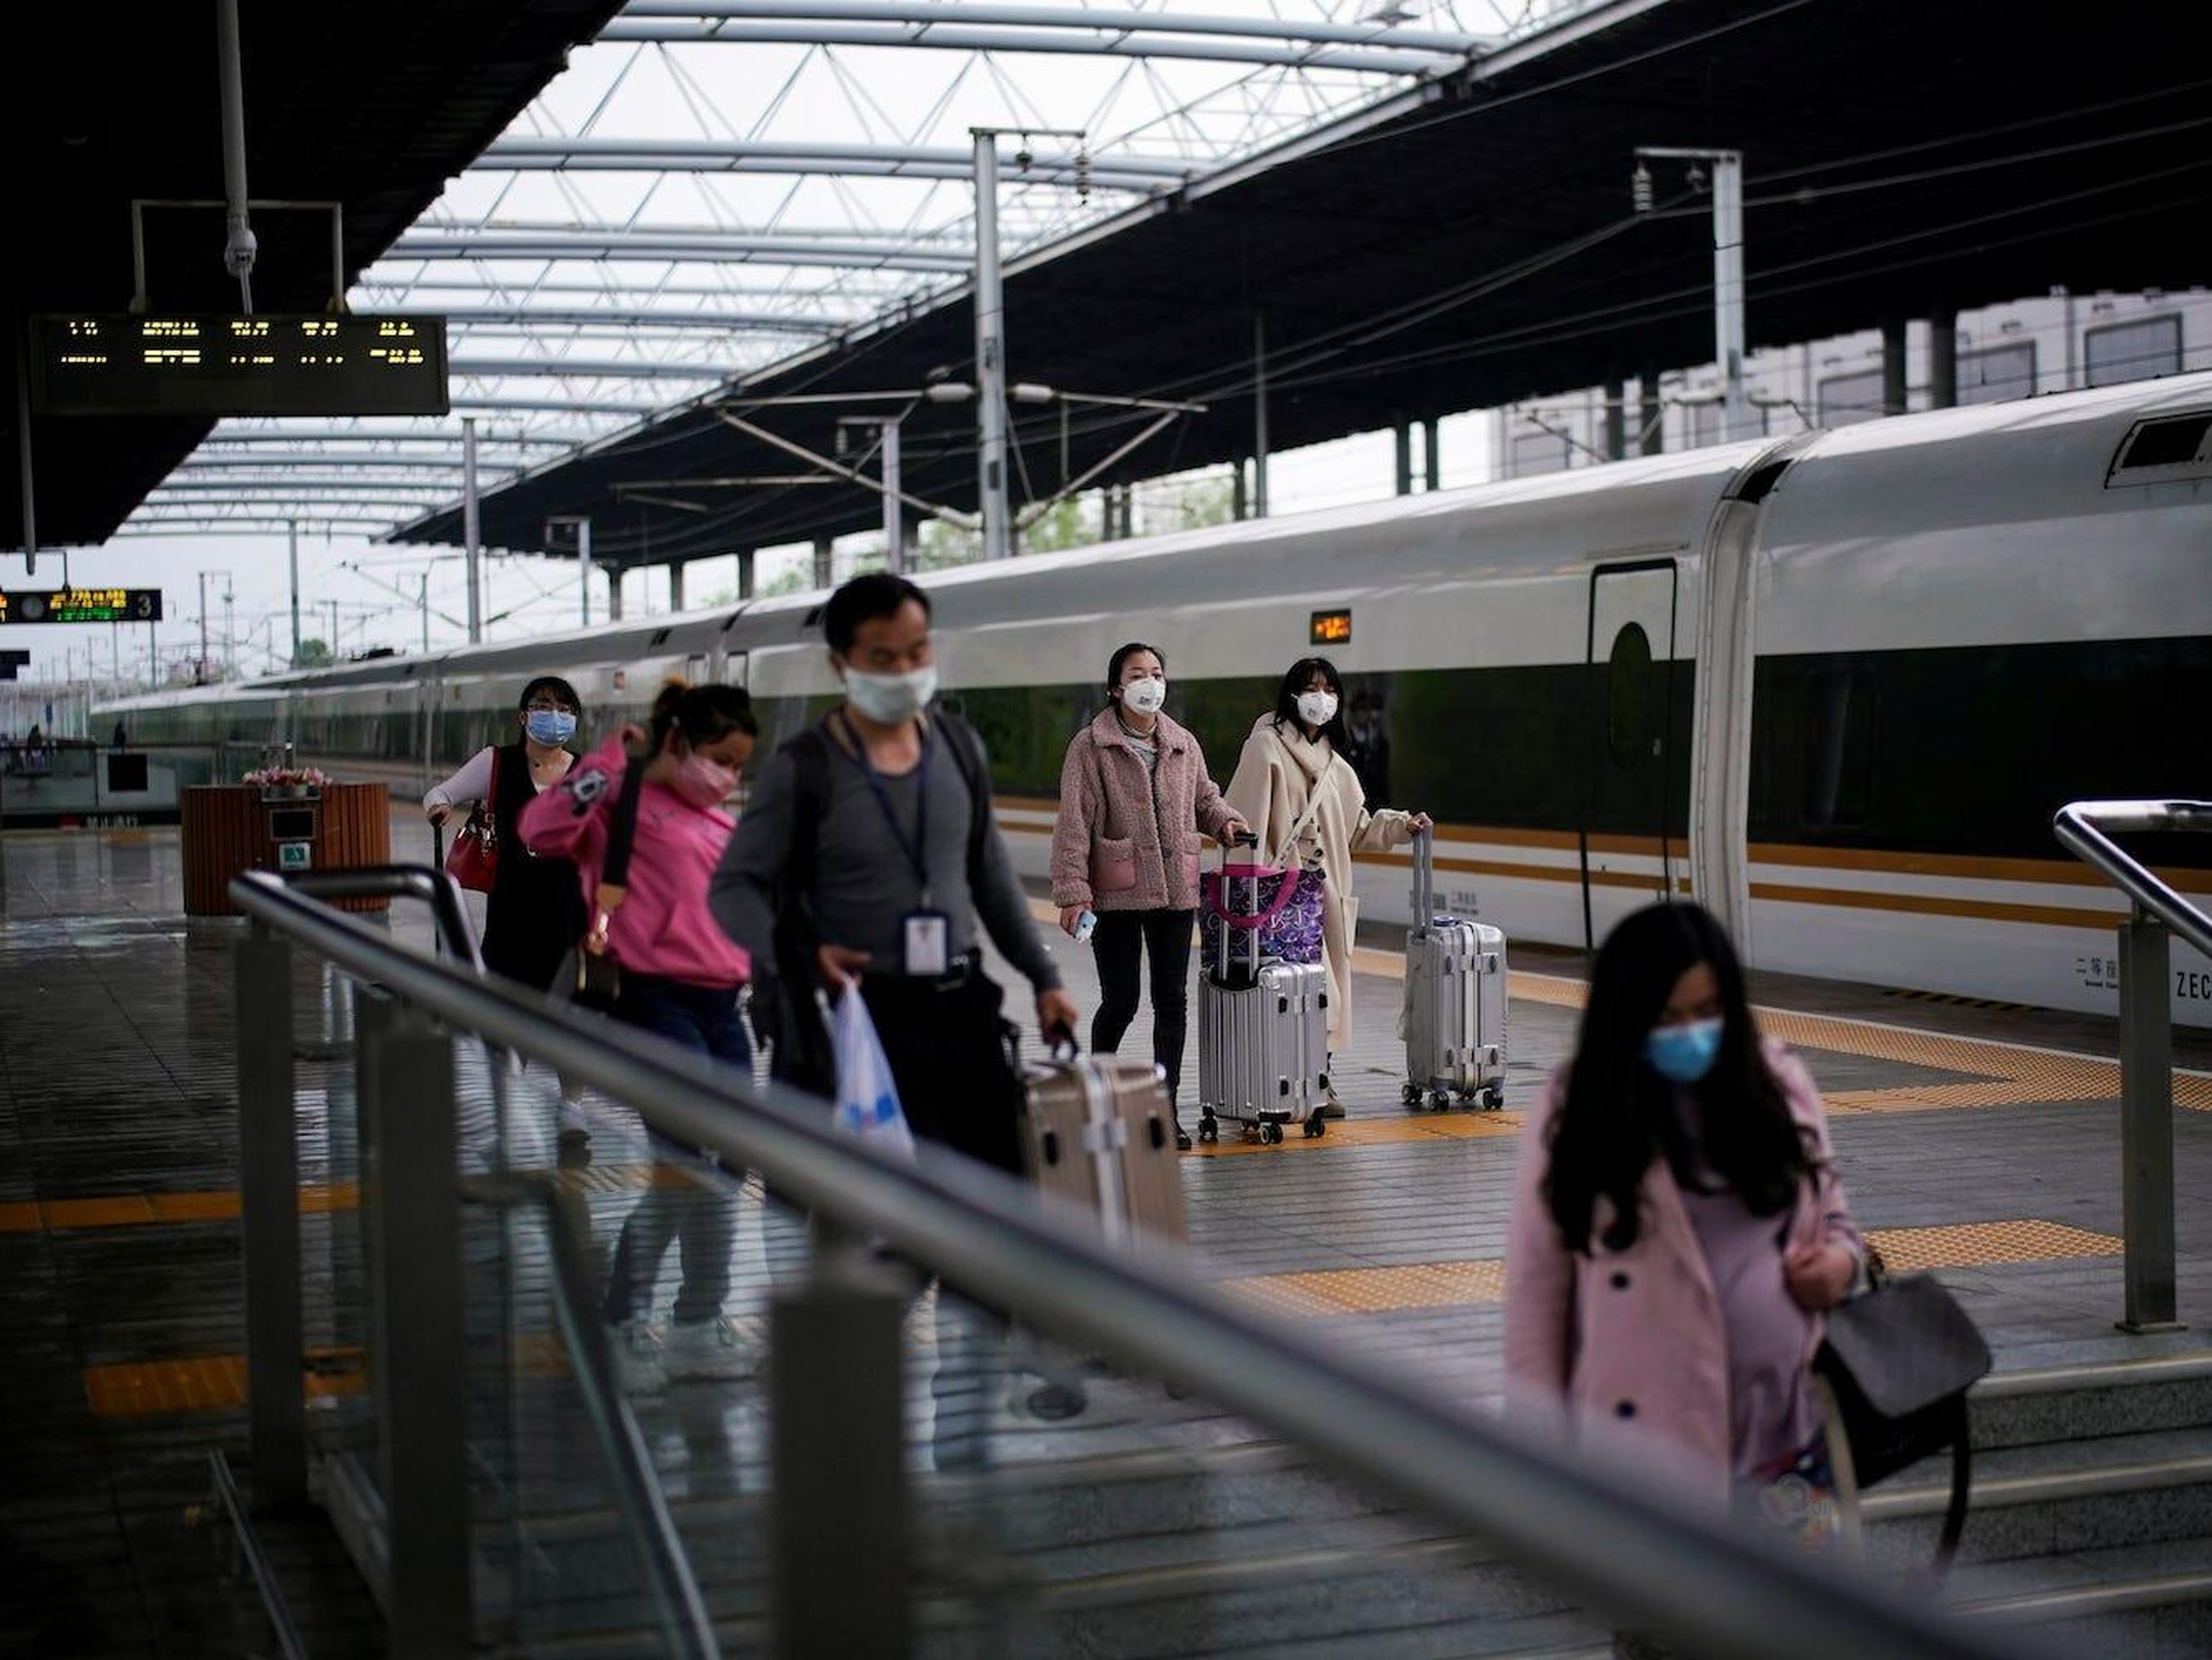 Pasajeros que llevan mascarillas viajan con sus maletas en una estación de tren en Xianning, provincia de Hubei, el 25 de marzo de 2020.